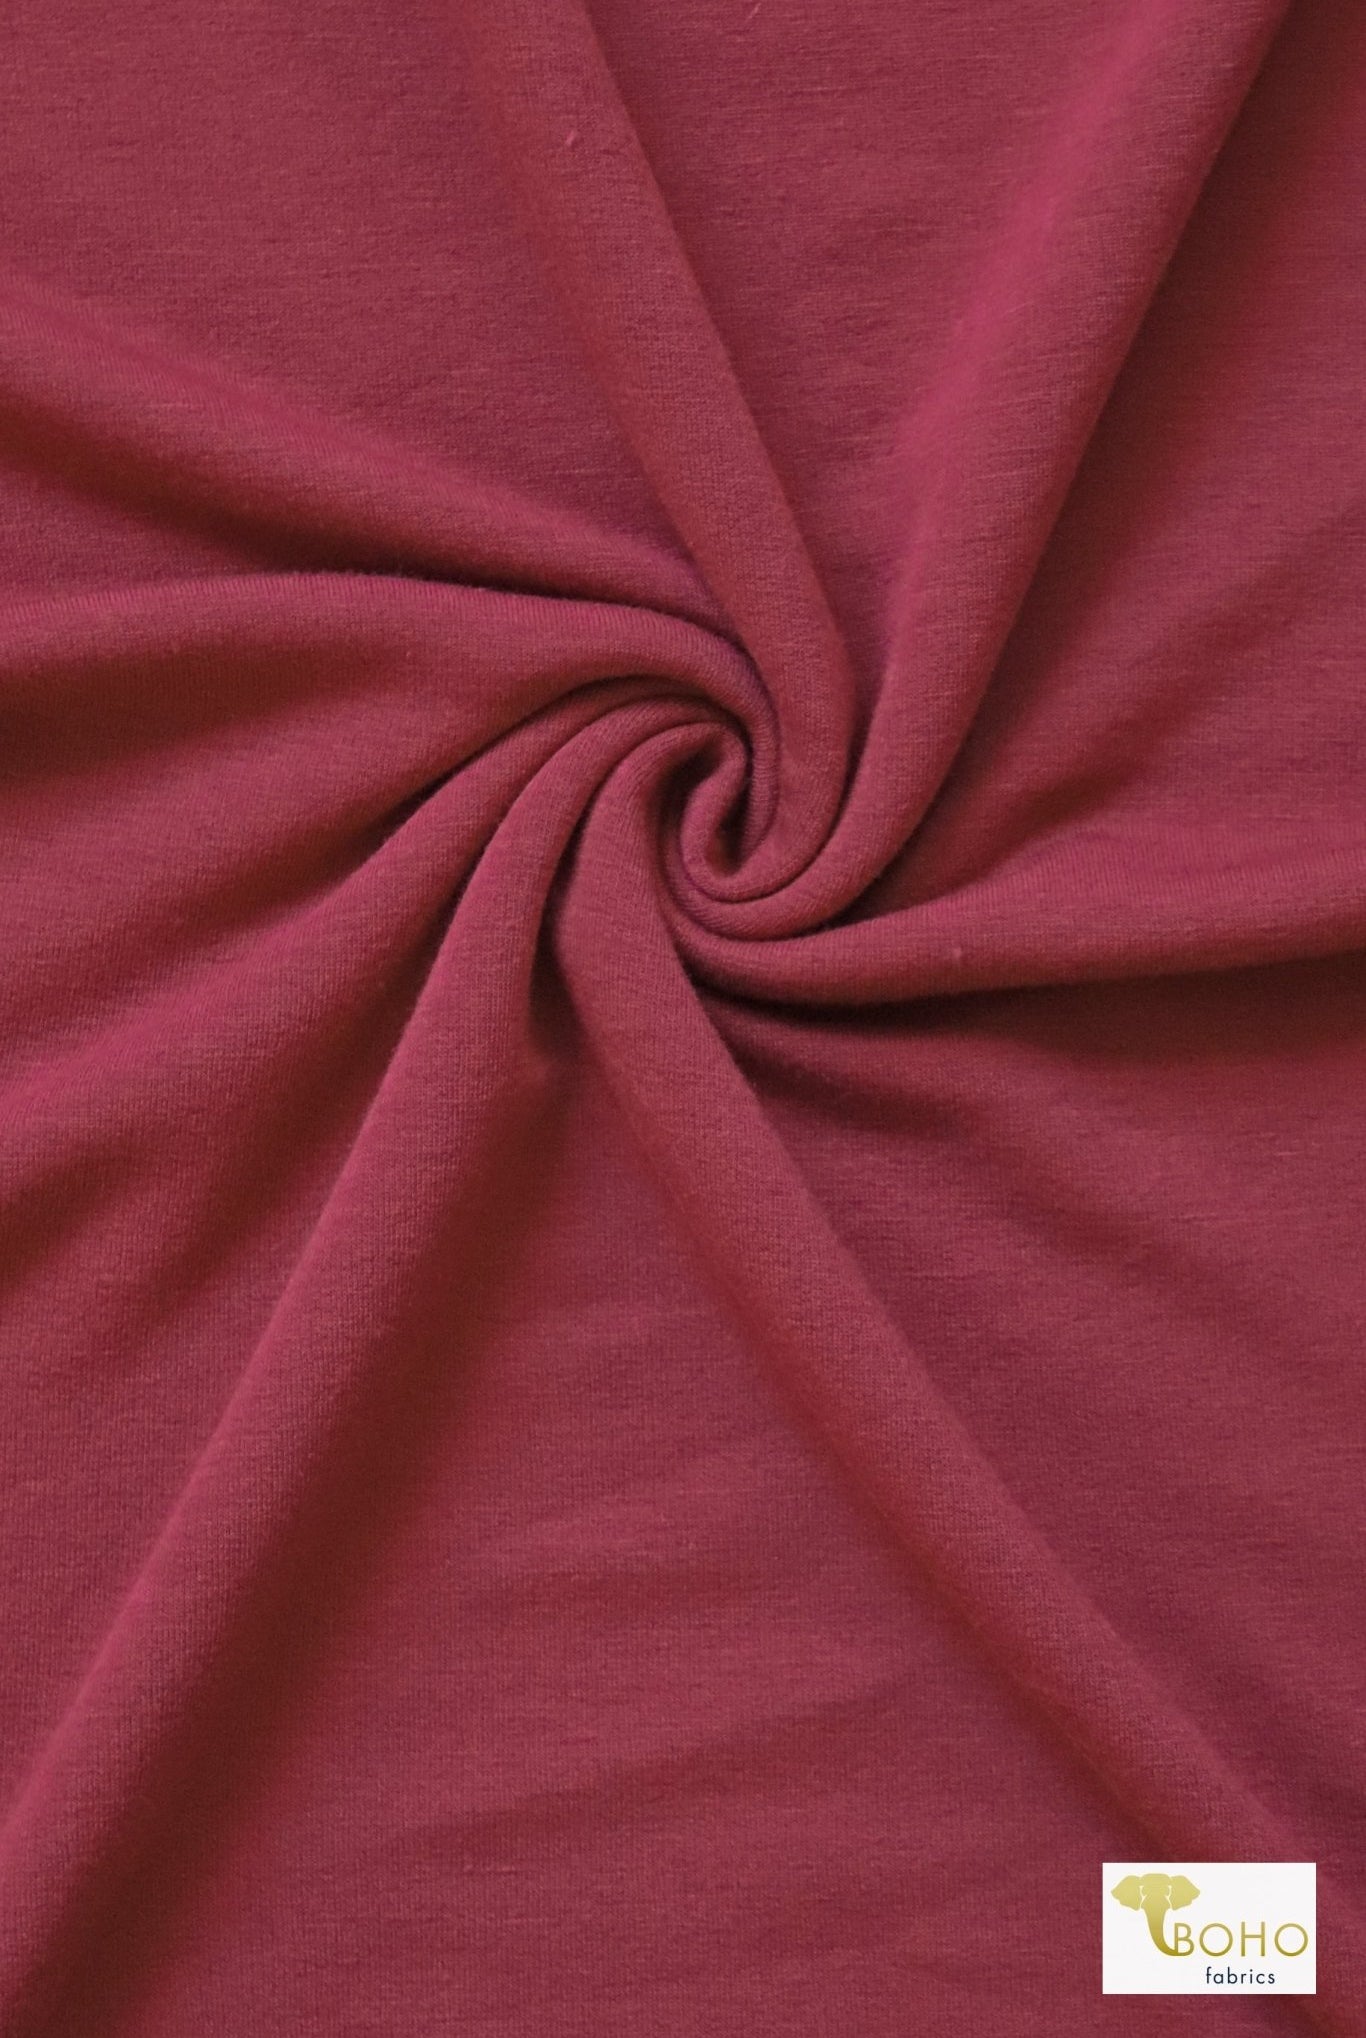 Marsala, Brushed French Terry Knit Fabric - Boho Fabrics